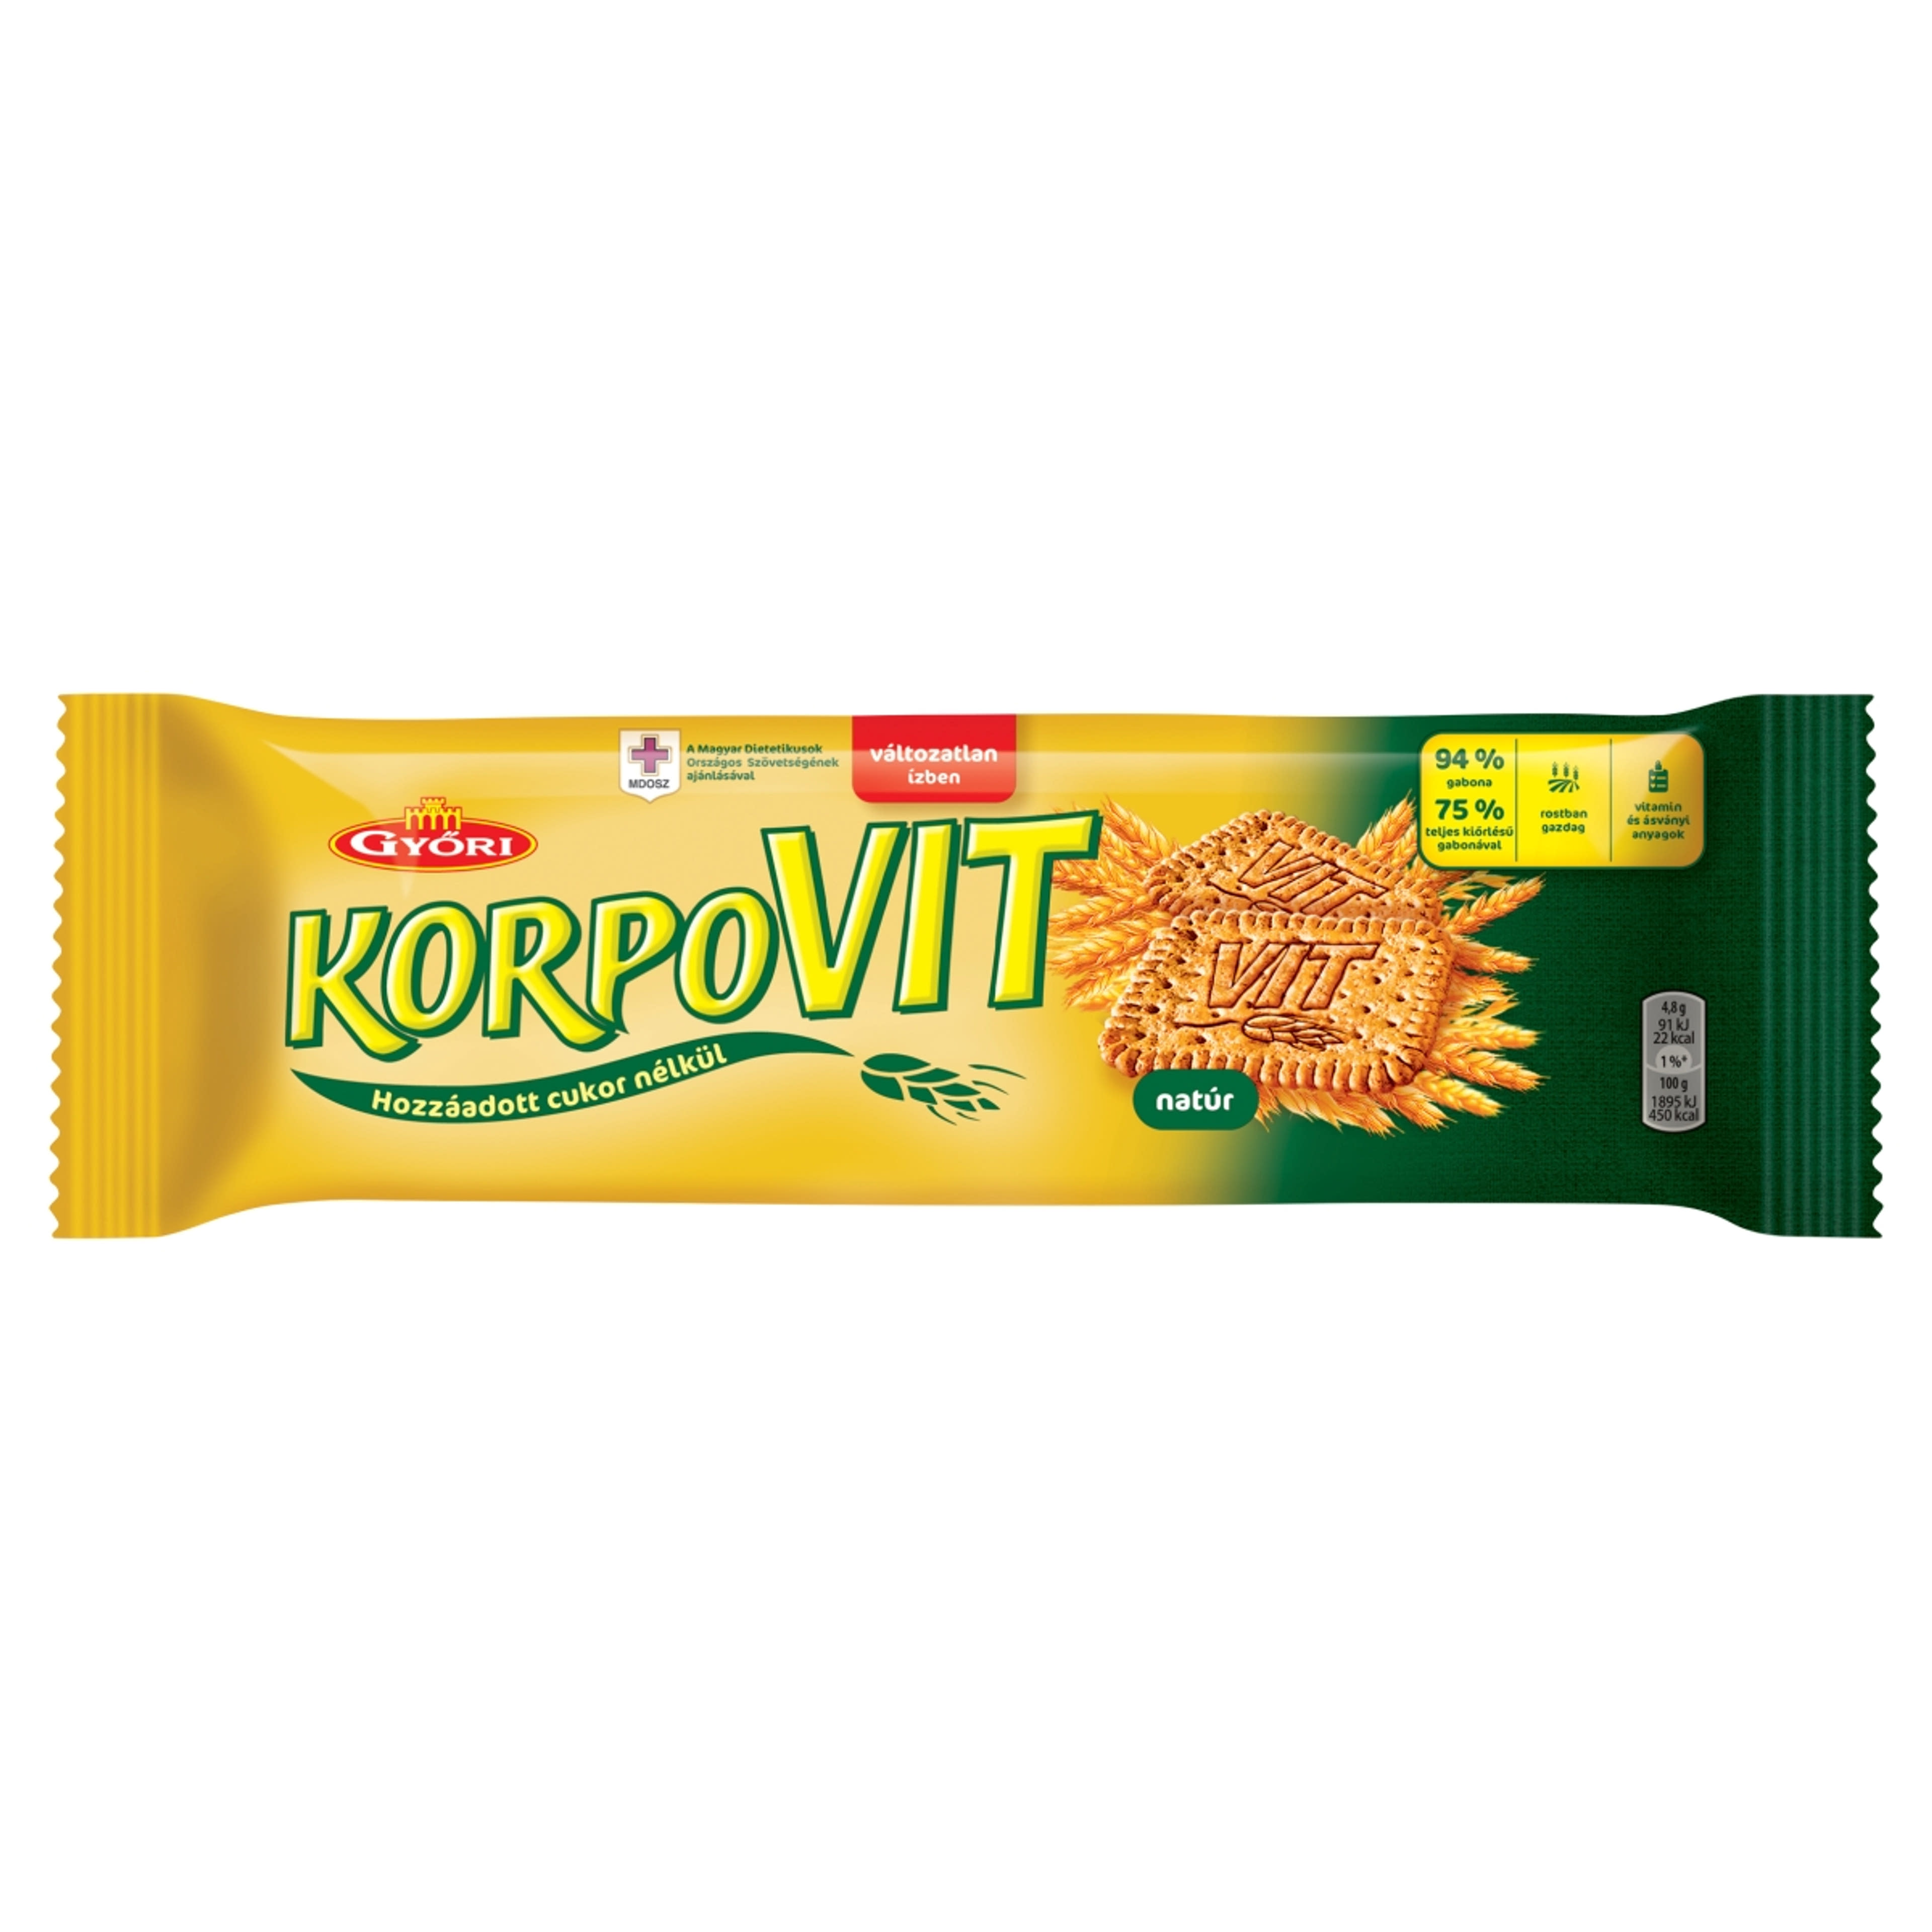 Győri korpovit keksz - 174 g-2